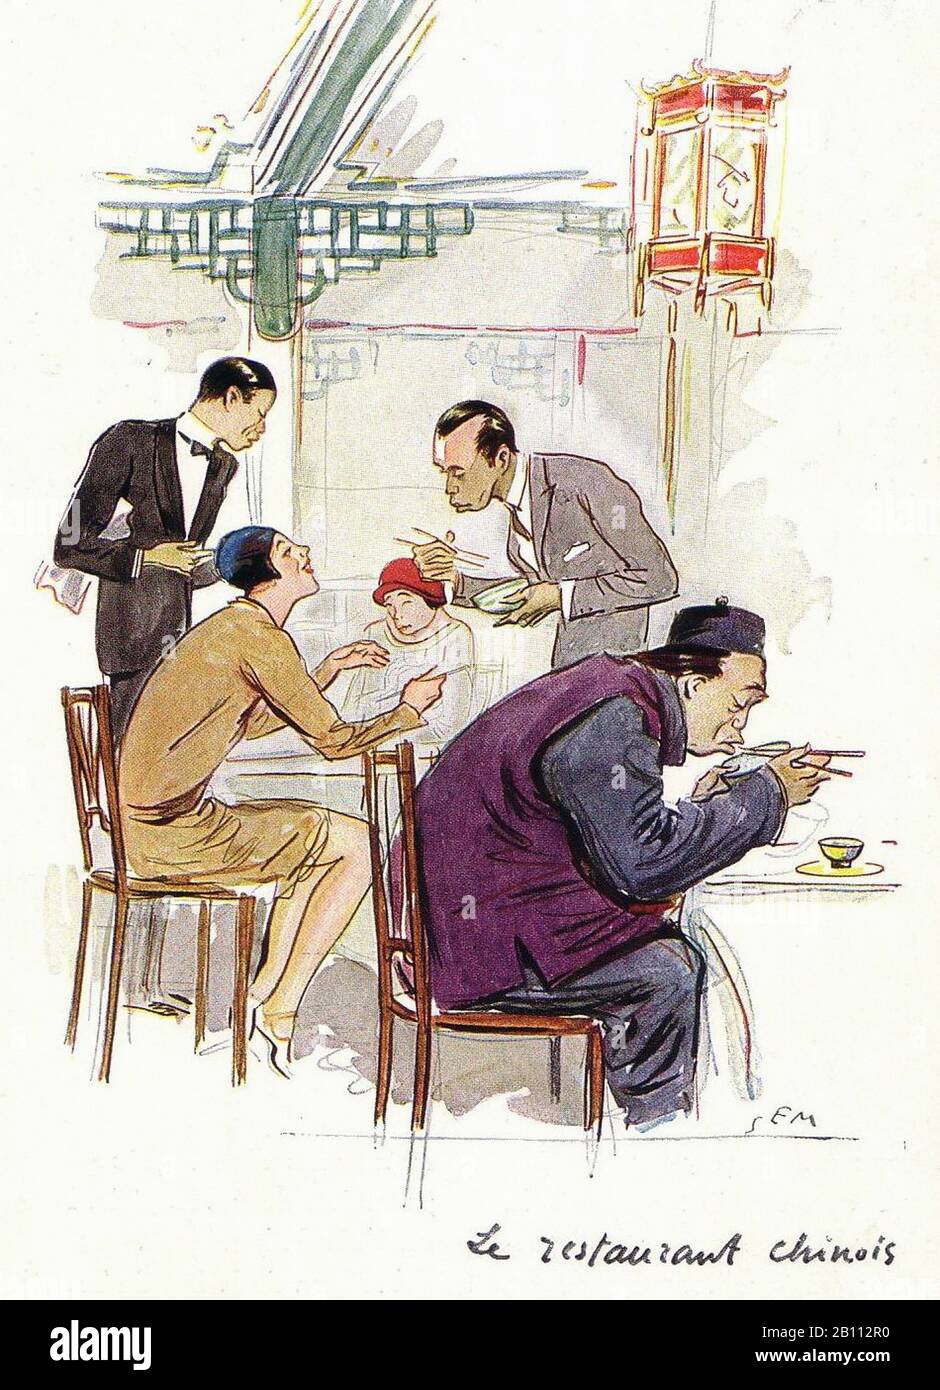 Le restaurant chinois - Illustration de SEM (Georges Goursat 1863–1934) Banque D'Images